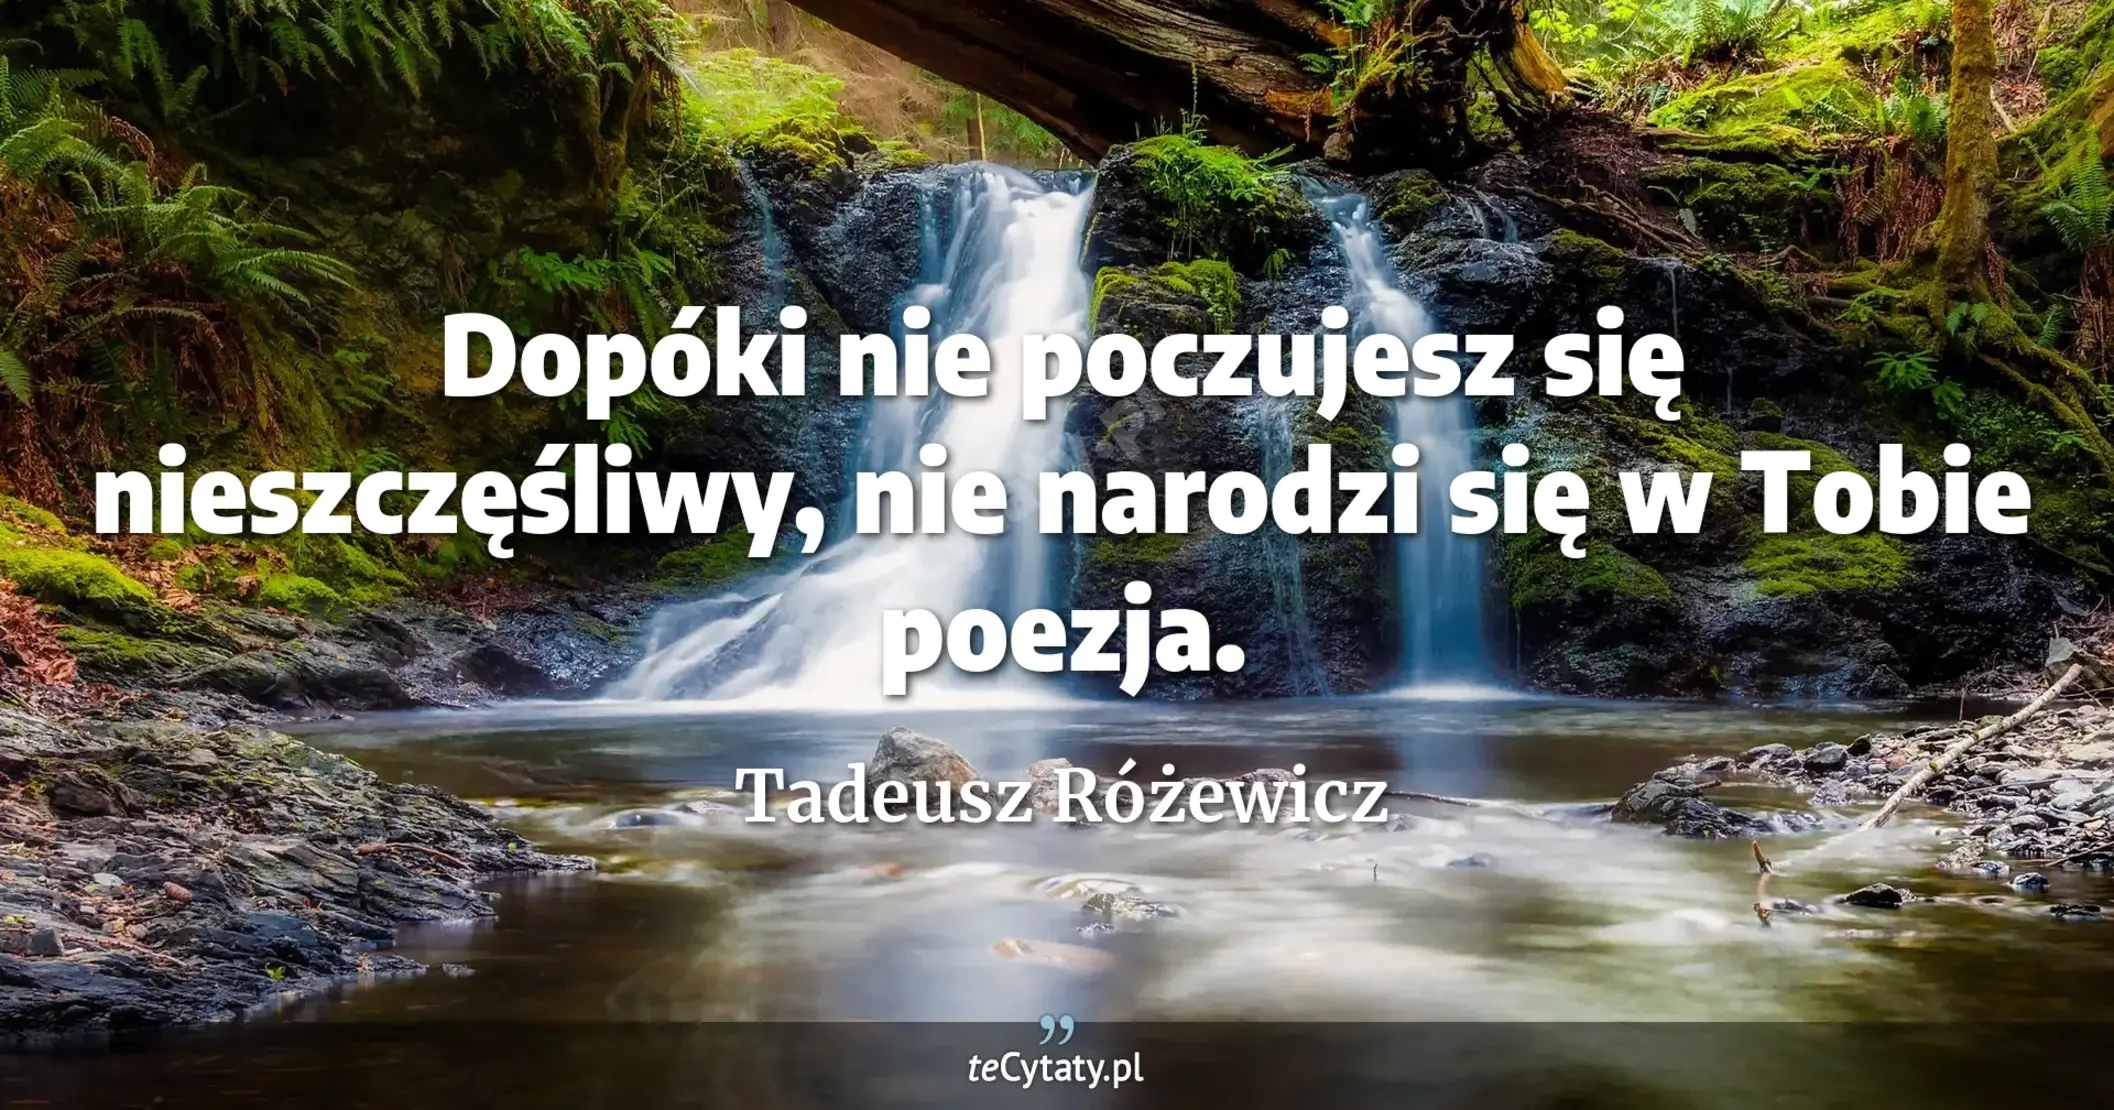 Dopóki nie poczujesz się nieszczęśliwy, nie narodzi się w Tobie poezja. - Tadeusz Różewicz